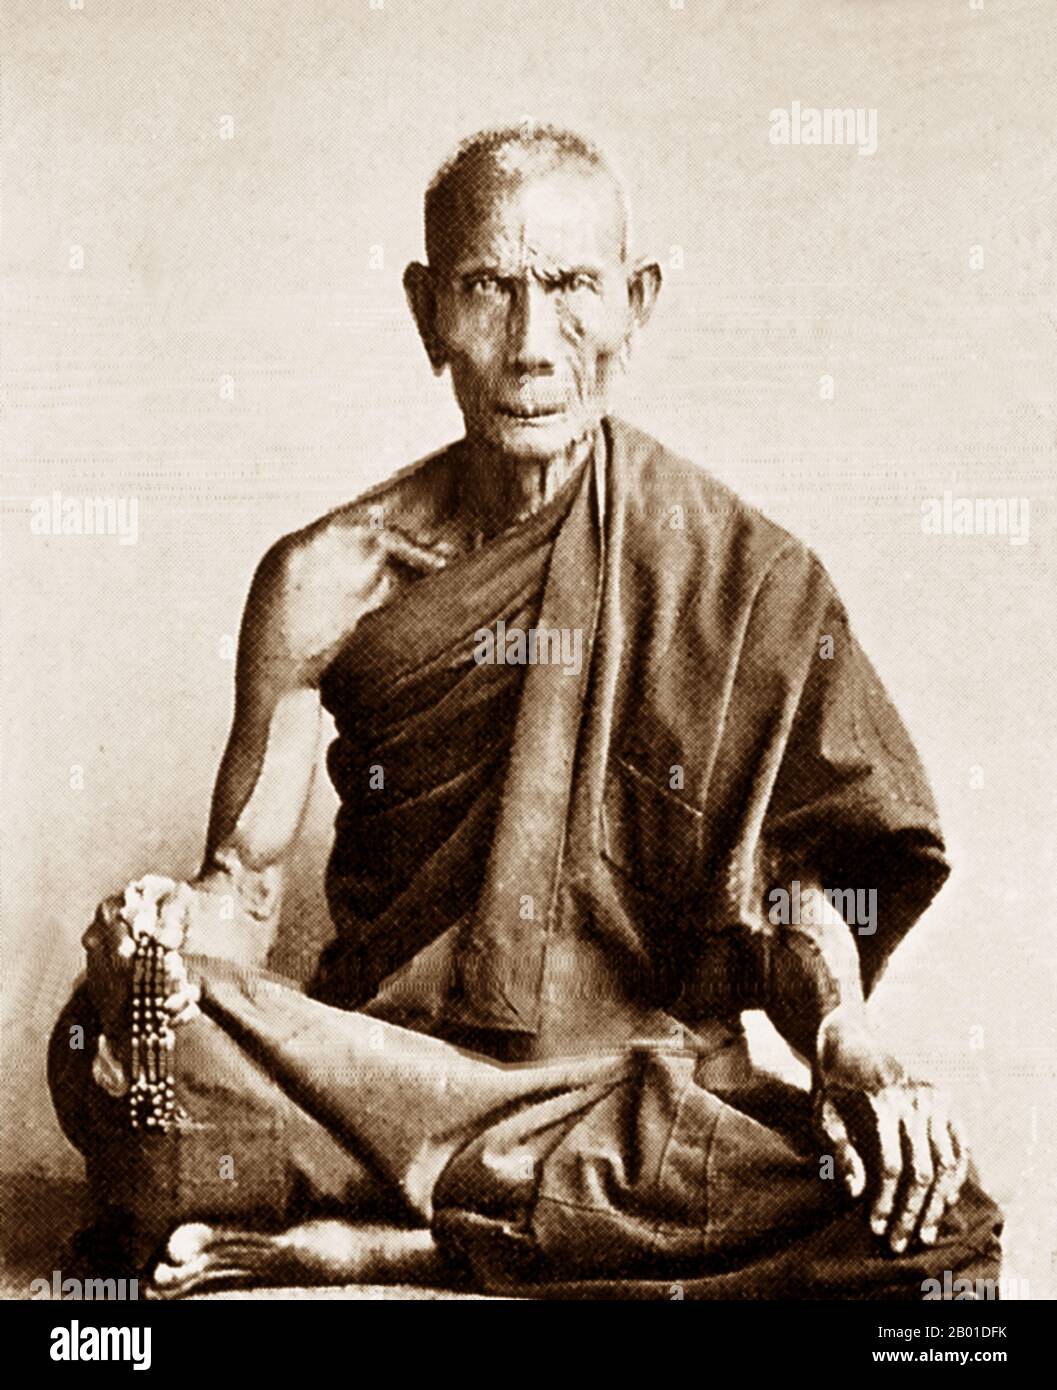 Birmanie : un moine bouddhiste birman reclus, c. 1892-1896. La légende attribue la première doctrine bouddhiste en Birmanie à 228 BCE lorsque Sonna et Uttara, deux ambassadeurs de l'empereur Ashoka le Grand de l'Inde, sont venus au pays avec des textes sacrés. Cependant, l'ère d'or du bouddhisme a vraiment commencé dans le 11th siècle après que le roi Anawrahta de Pagan (Bagan) a été converti au bouddhisme Theravada. Aujourd'hui, 89% de la population birmane est bouddhiste Theravada. La conquête britannique de la Birmanie a commencé en 1824 en réponse à une tentative birmane d'envahir l'Inde. Banque D'Images